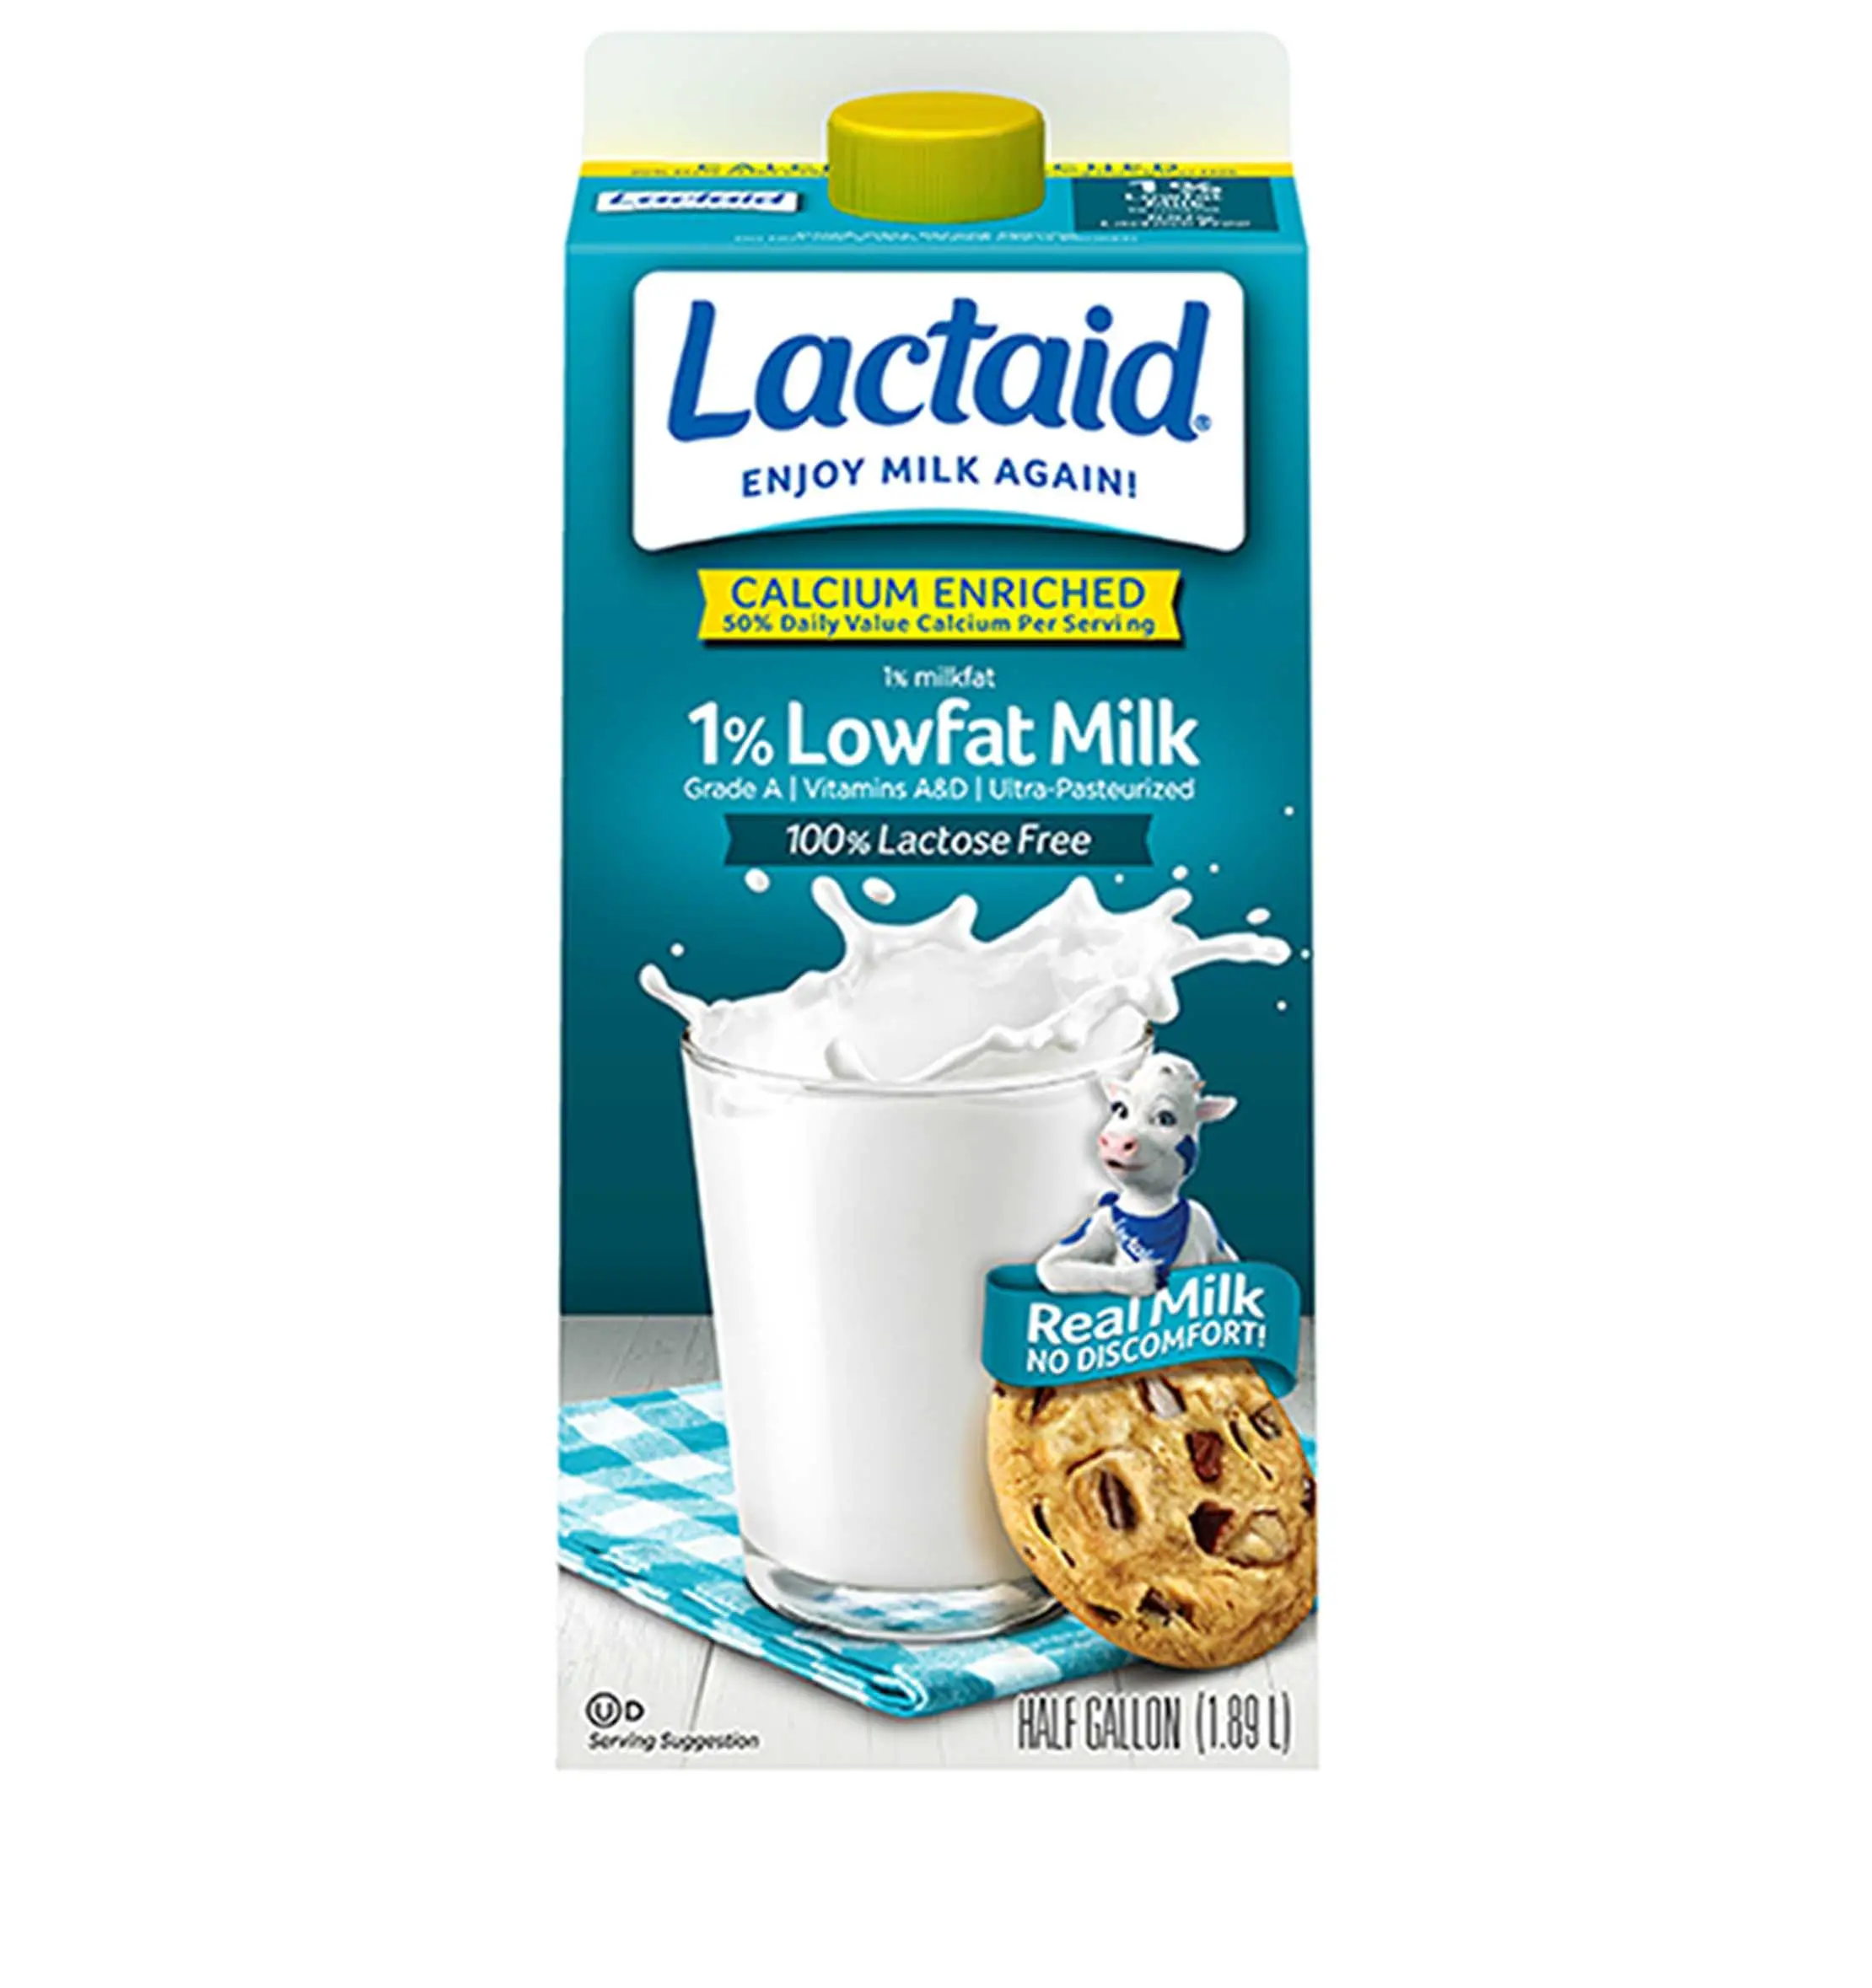 LACTAID® Calcium